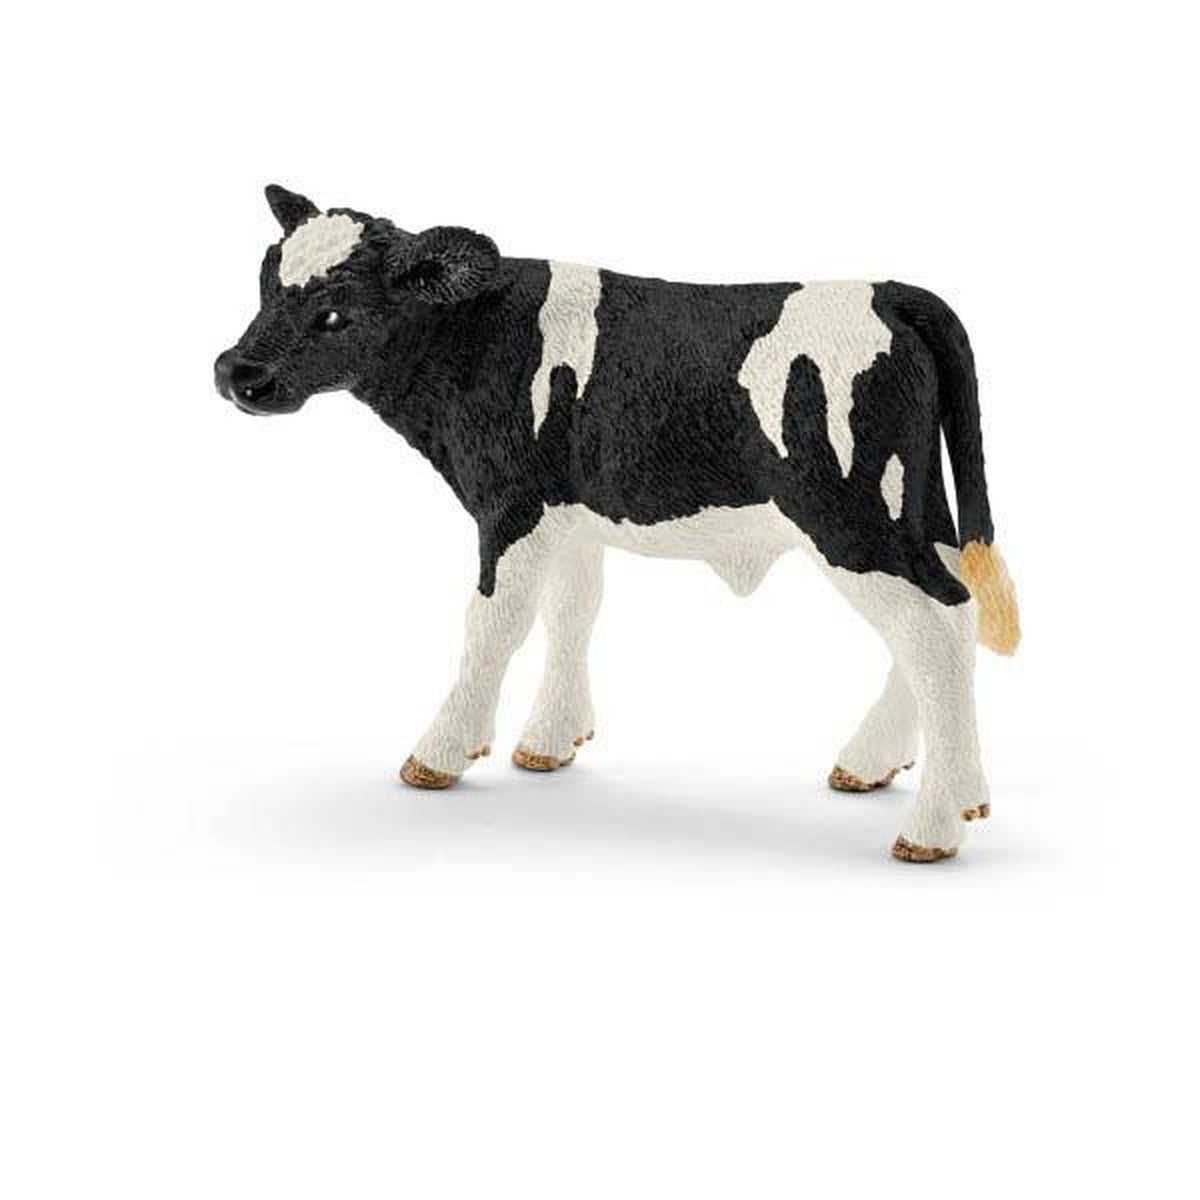 Schleich Holstein calf-people, animals & lands-Schleich-Dilly Dally Kids